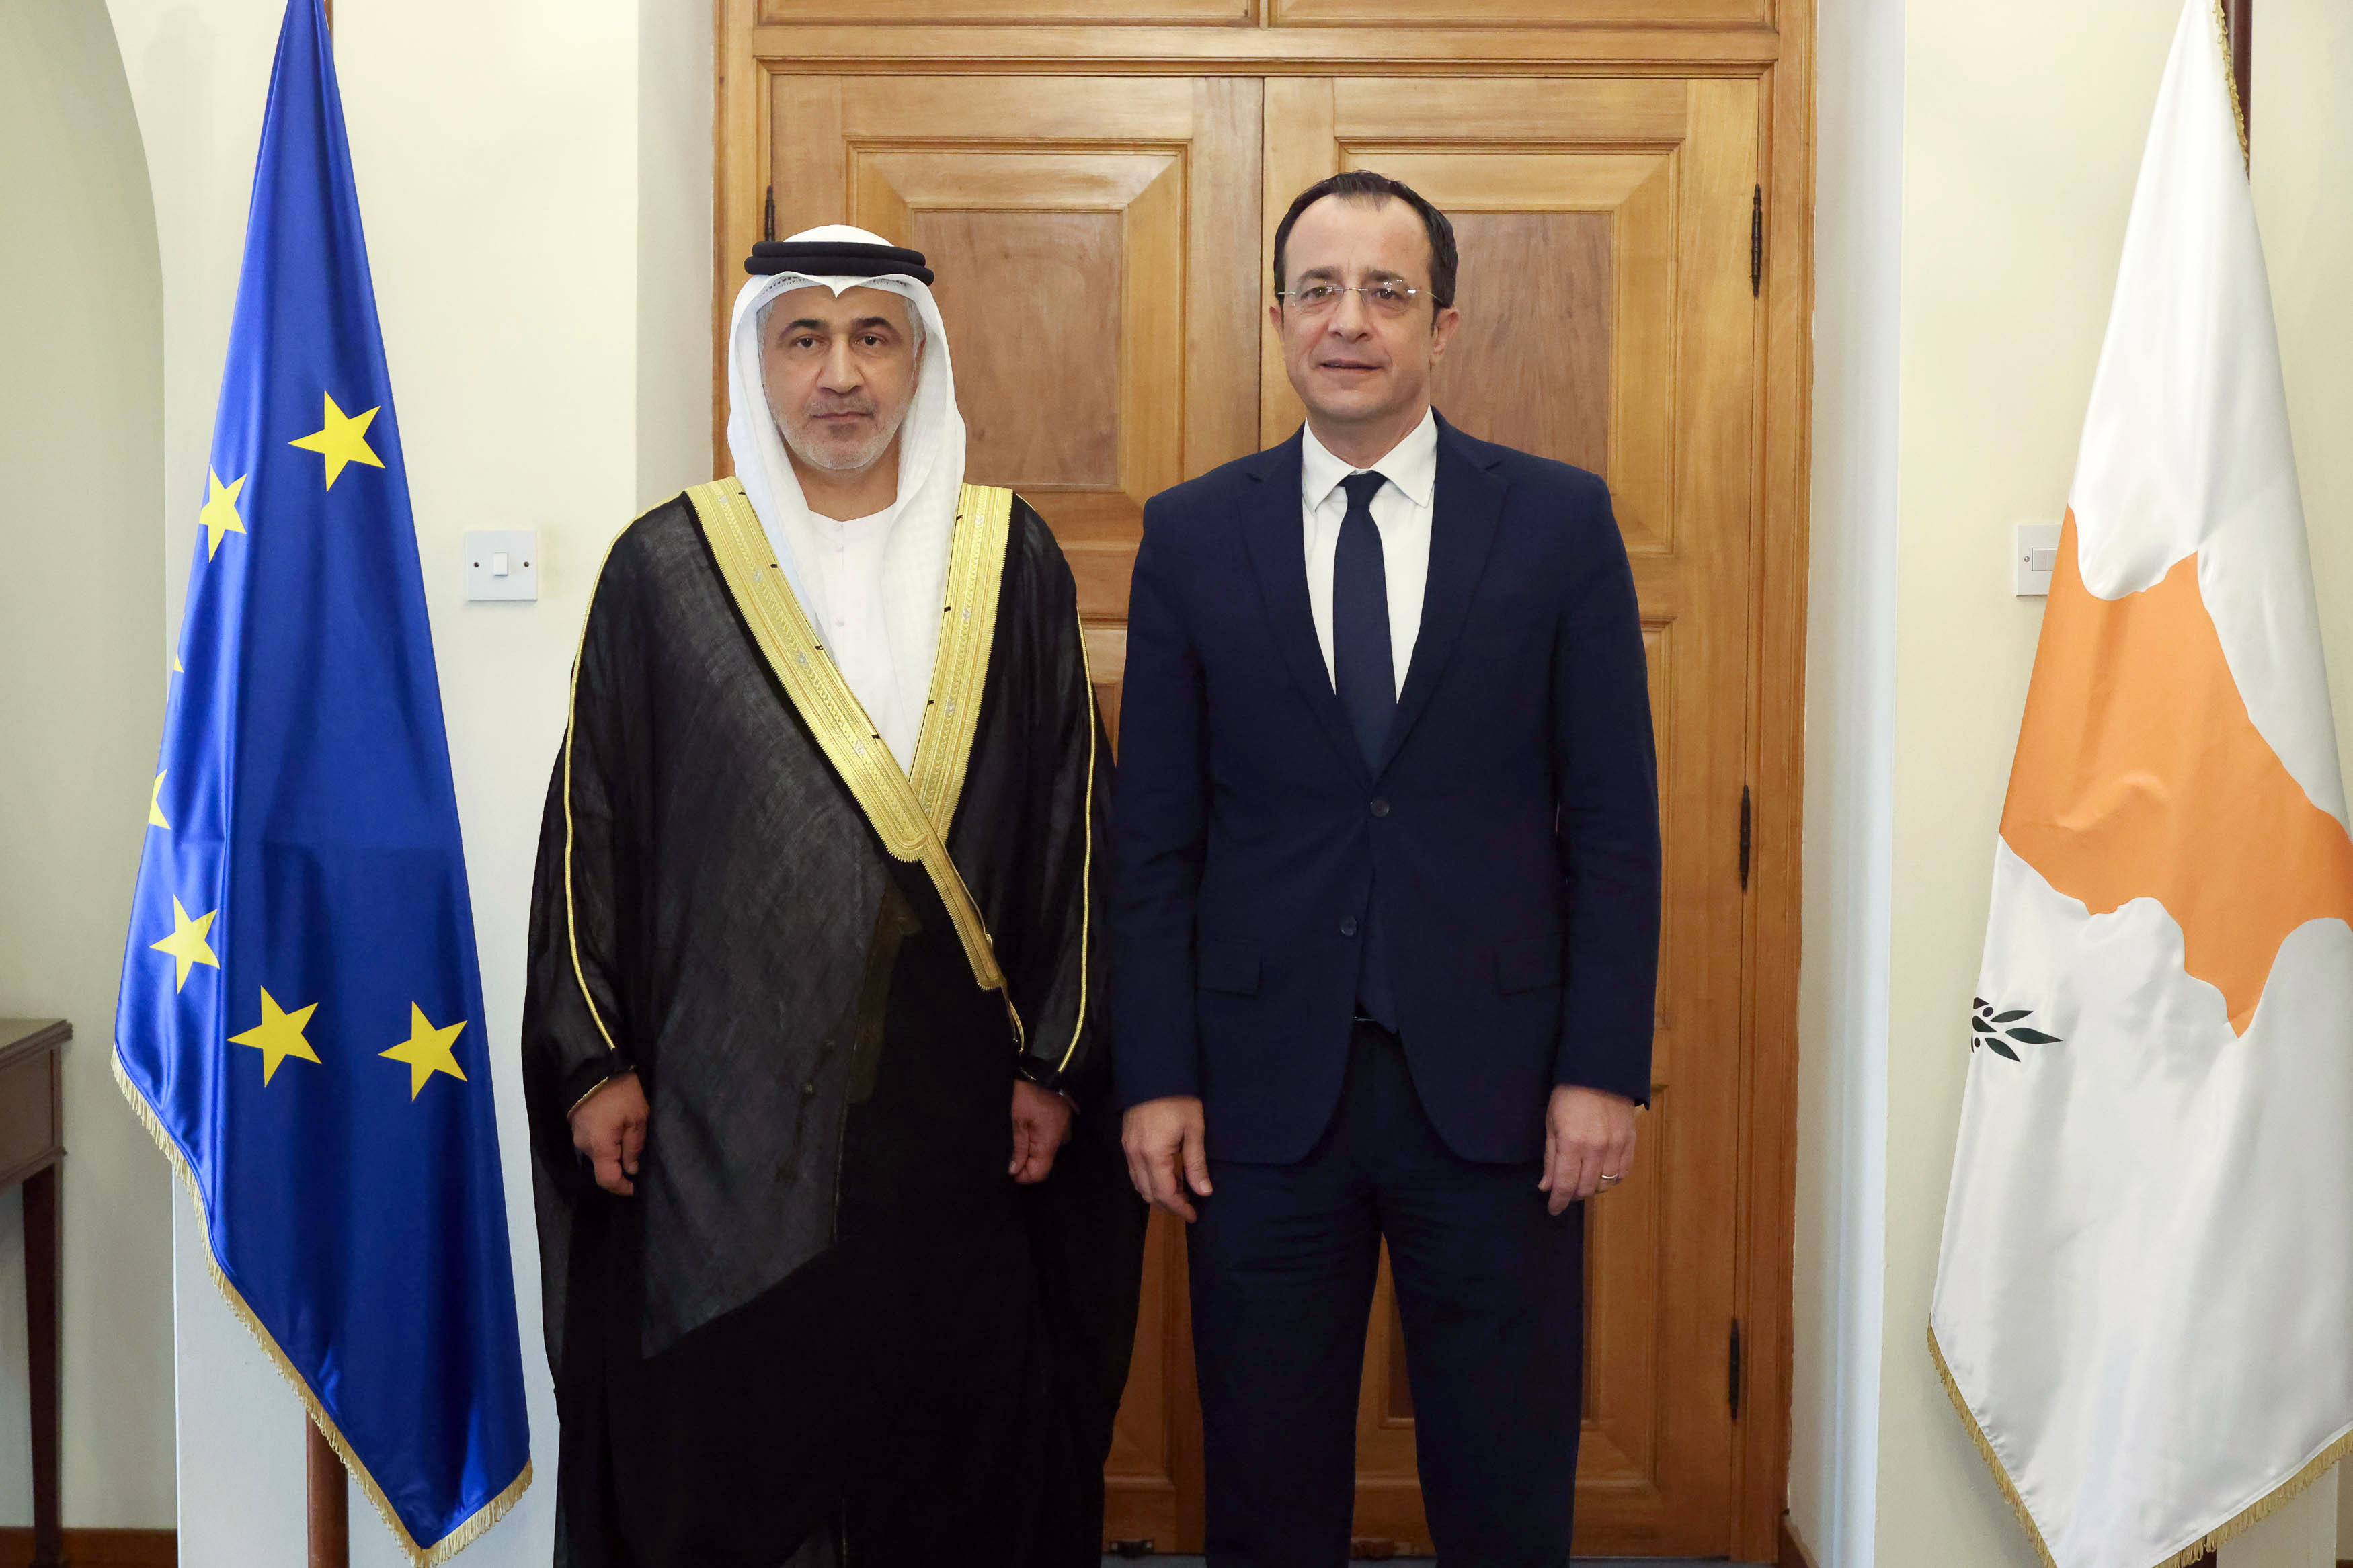 رئيس قبرص يتسلم أوراق اعتماد سفير الدولة
